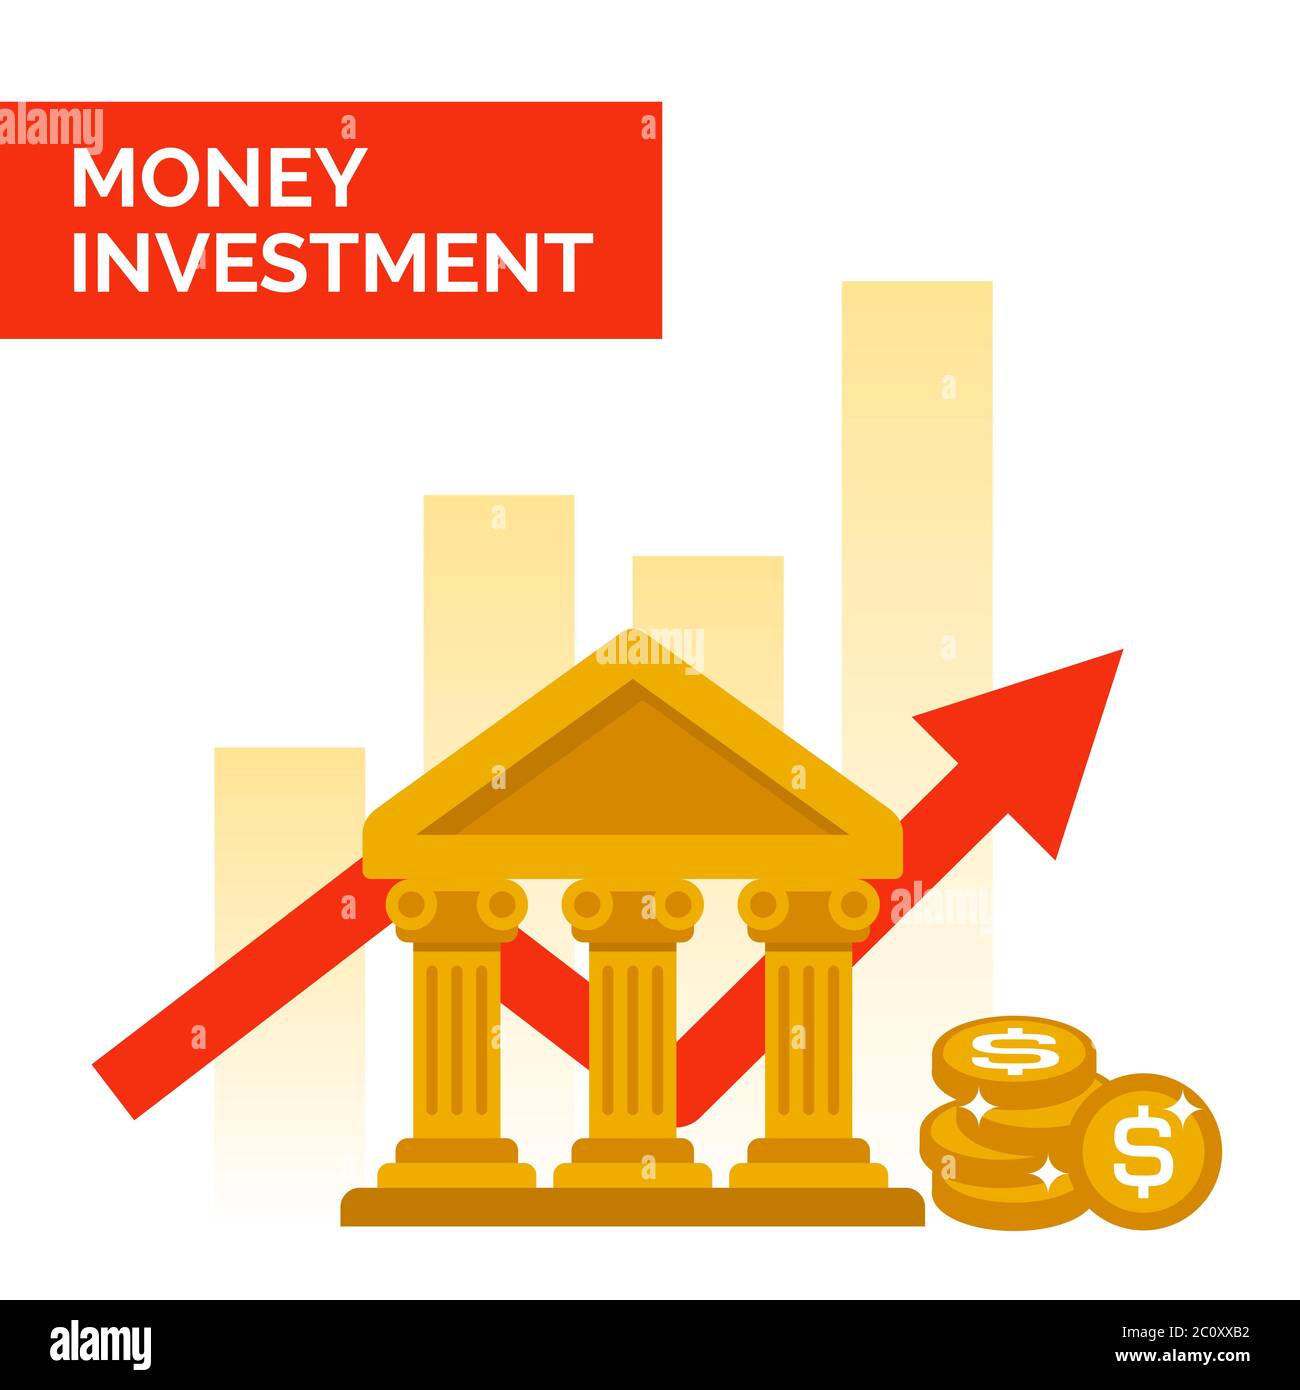 Vektor-Illustration der finanziellen Investition in eine Bank. Geeignet für langfristige Einsparungen, Finanzpläne und profitable Anlagedienstleistungen. Stock Vektor